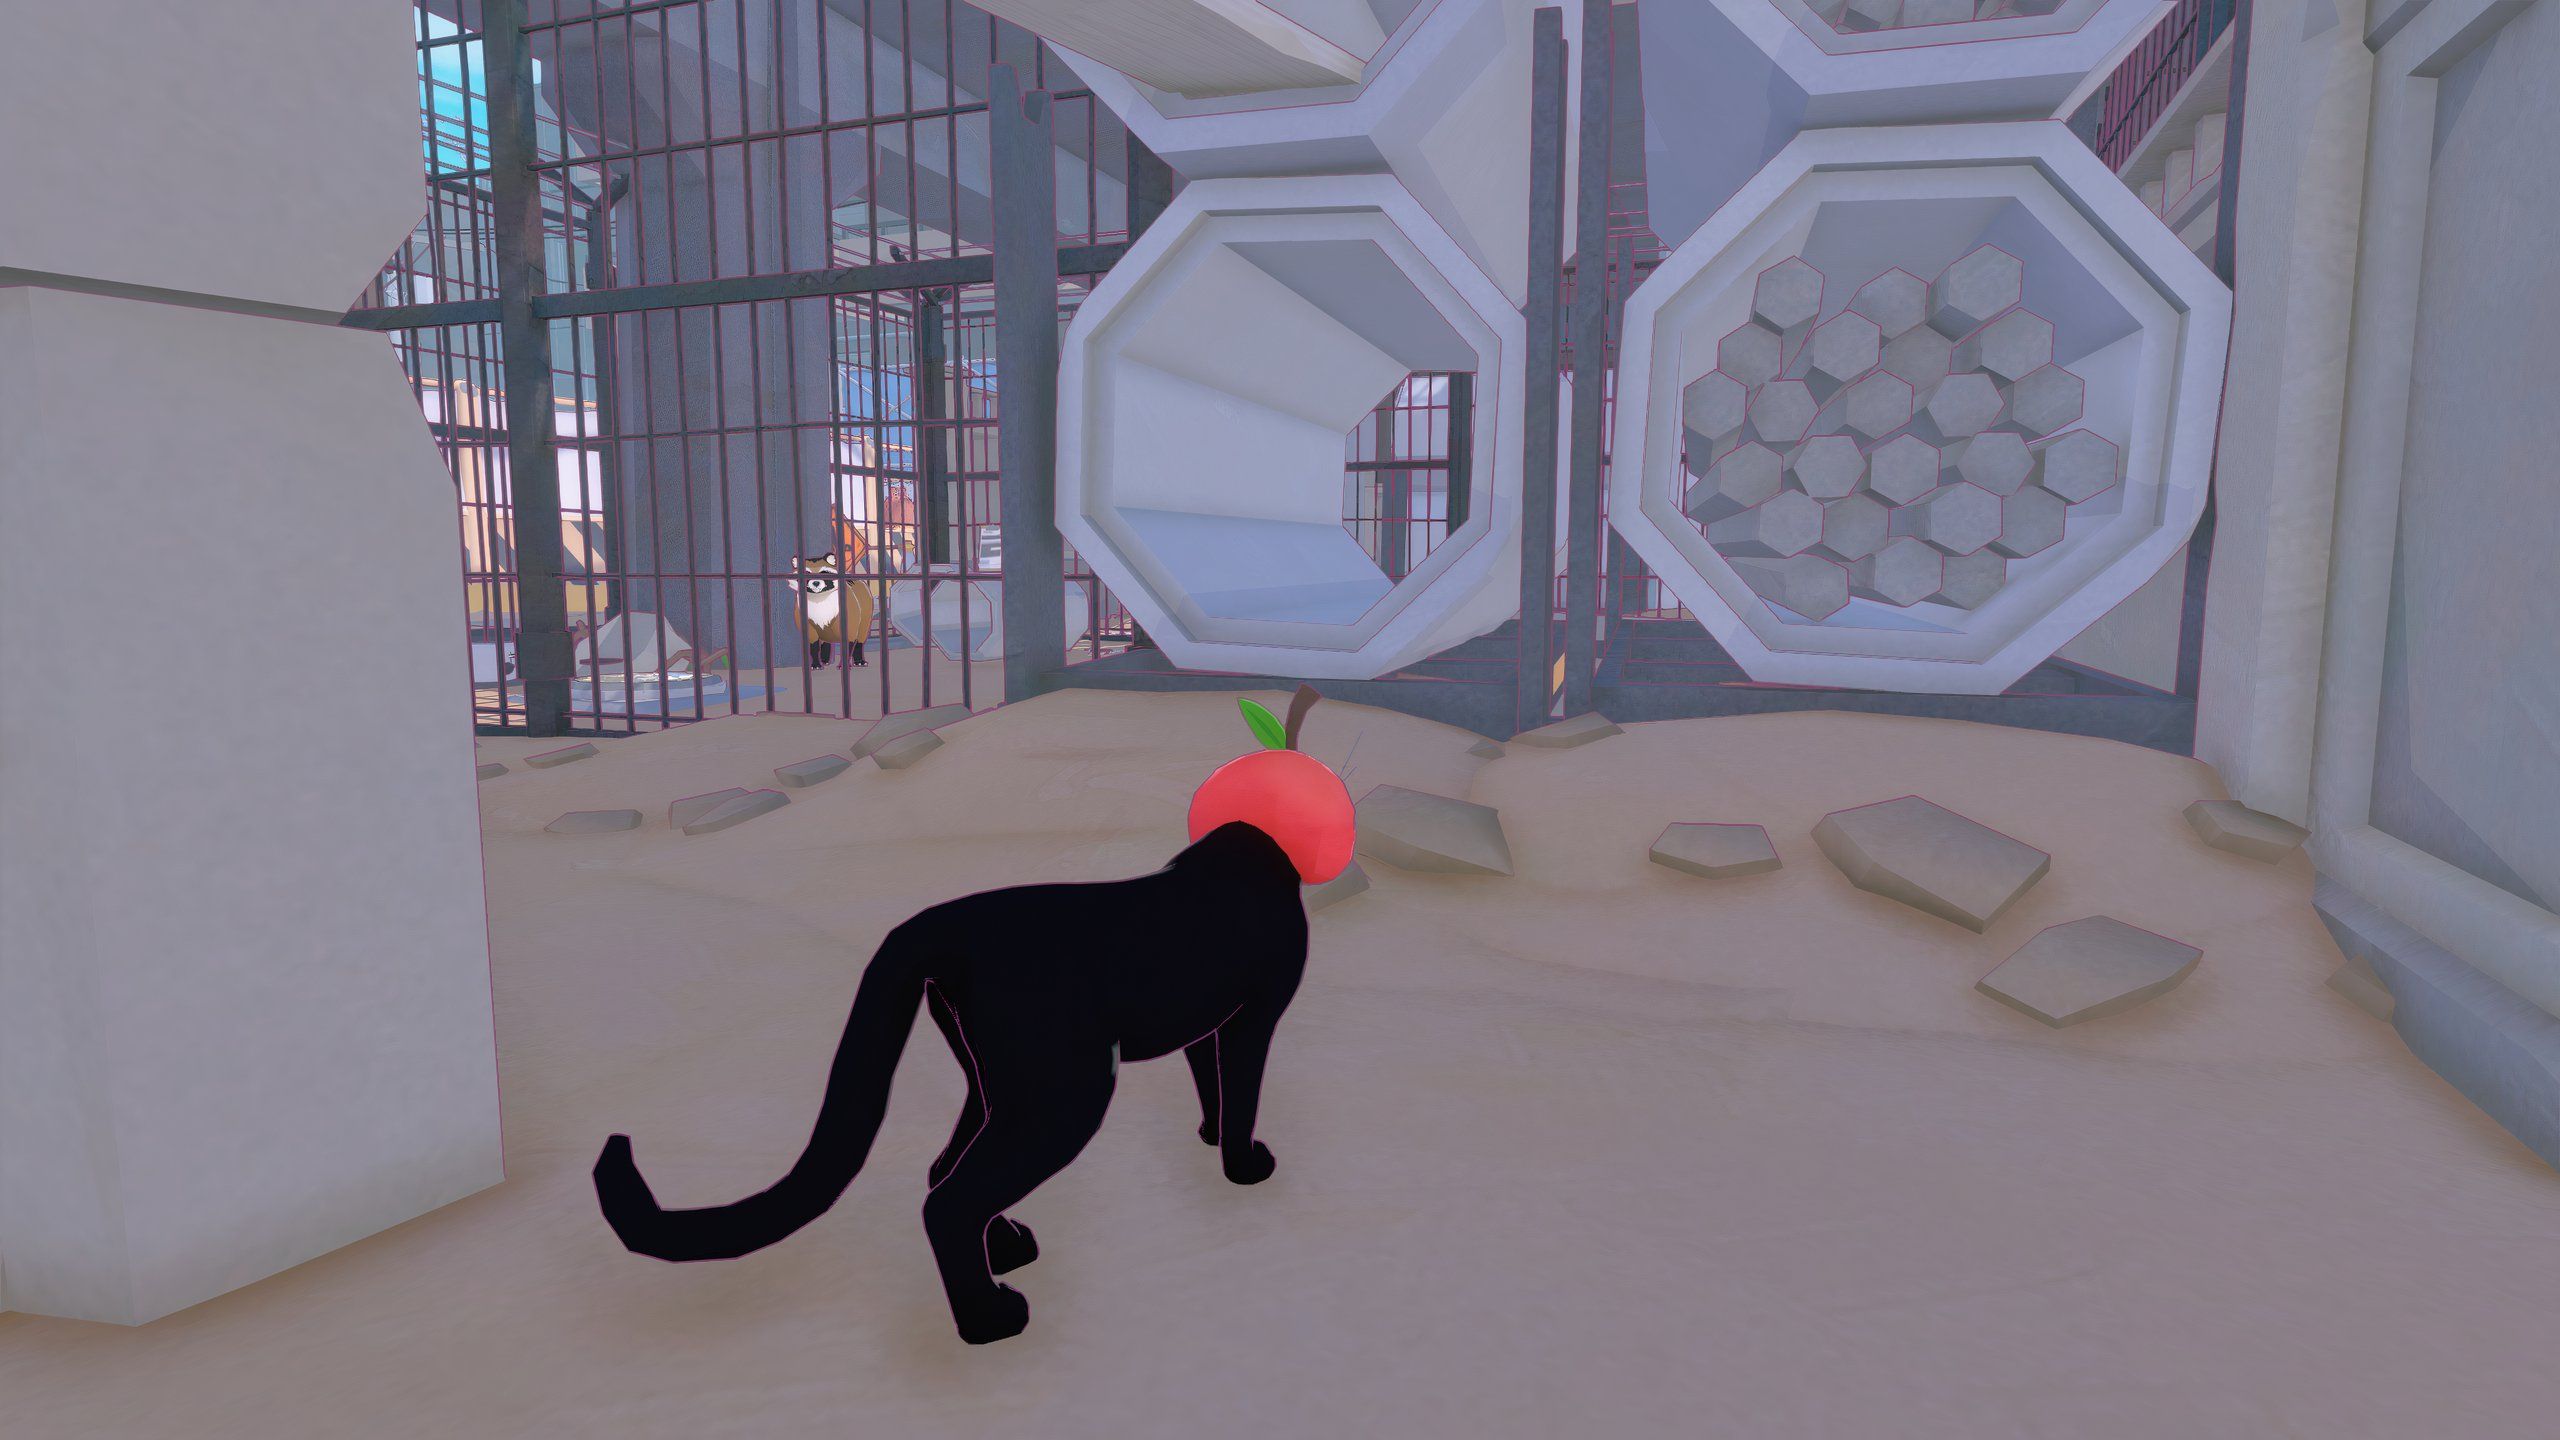 Gato preto usando chapéu de tomate vermelho se aproximando de um túnel de concreto em uma zona de construção em Little Kitty, cidade grande